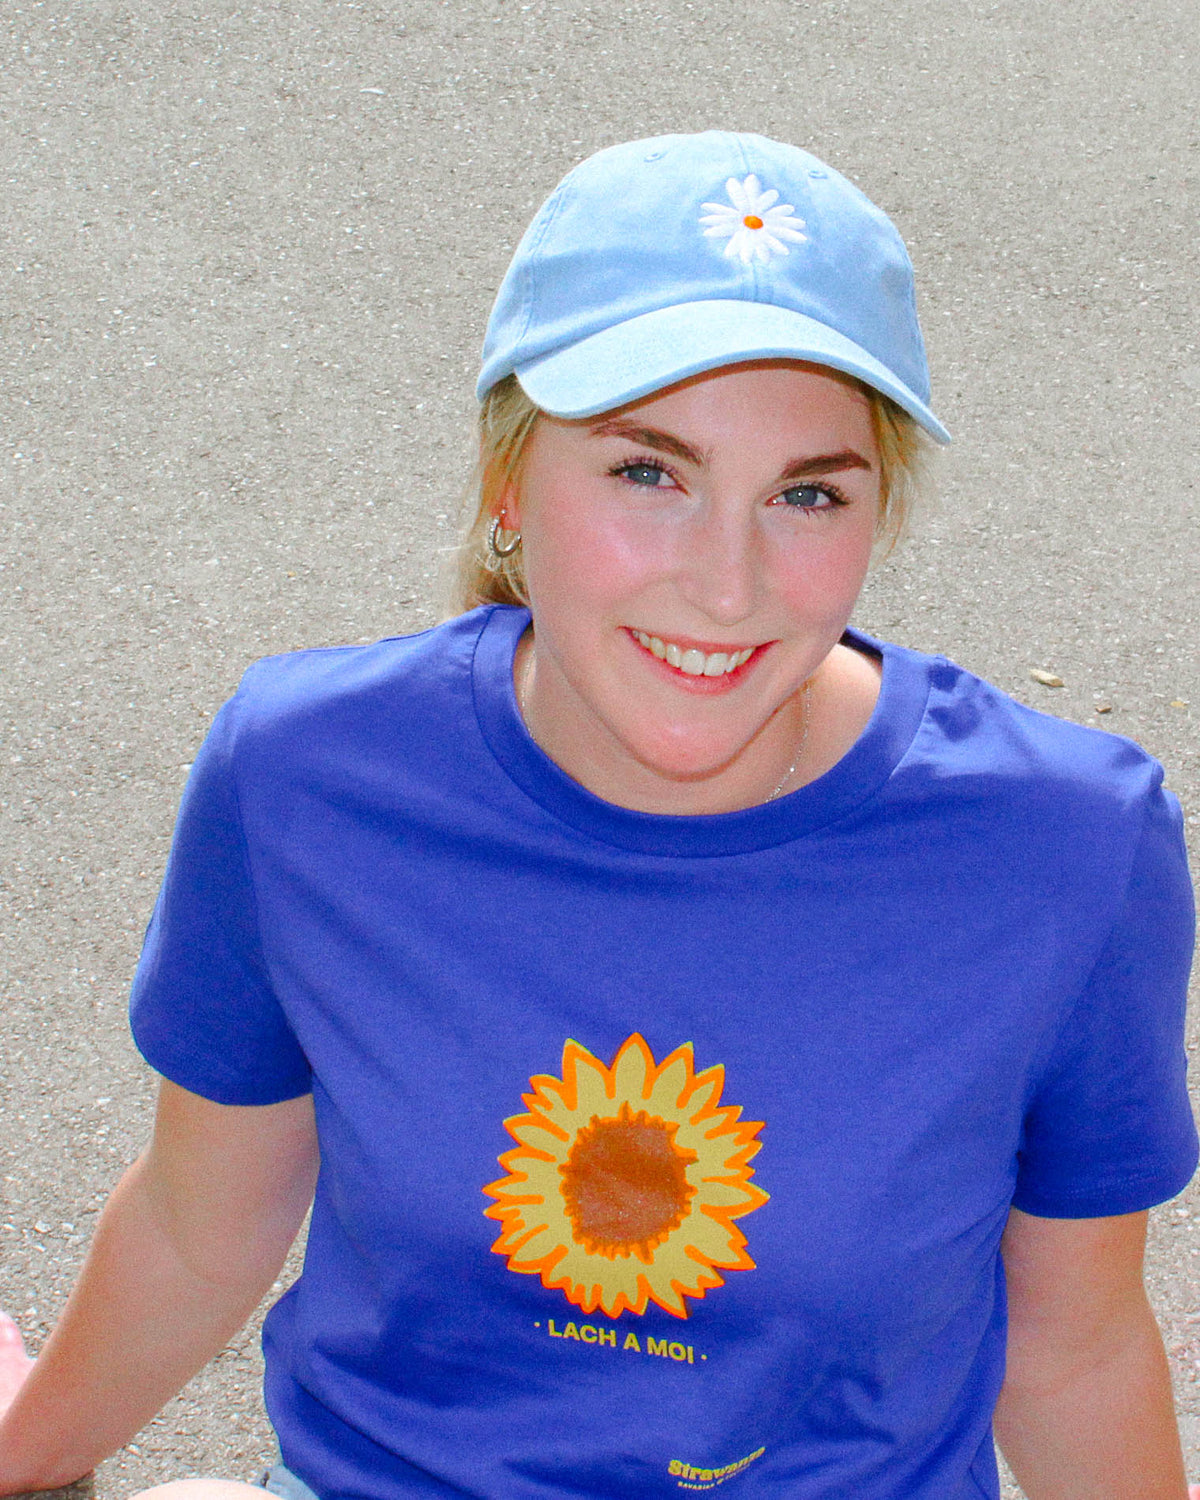 Ein weibliches Model trägt ein blaues T-Shirt mit einer Sonnenblume und einem gelben "LACH A MOI" Schriftzug als Motiv. 